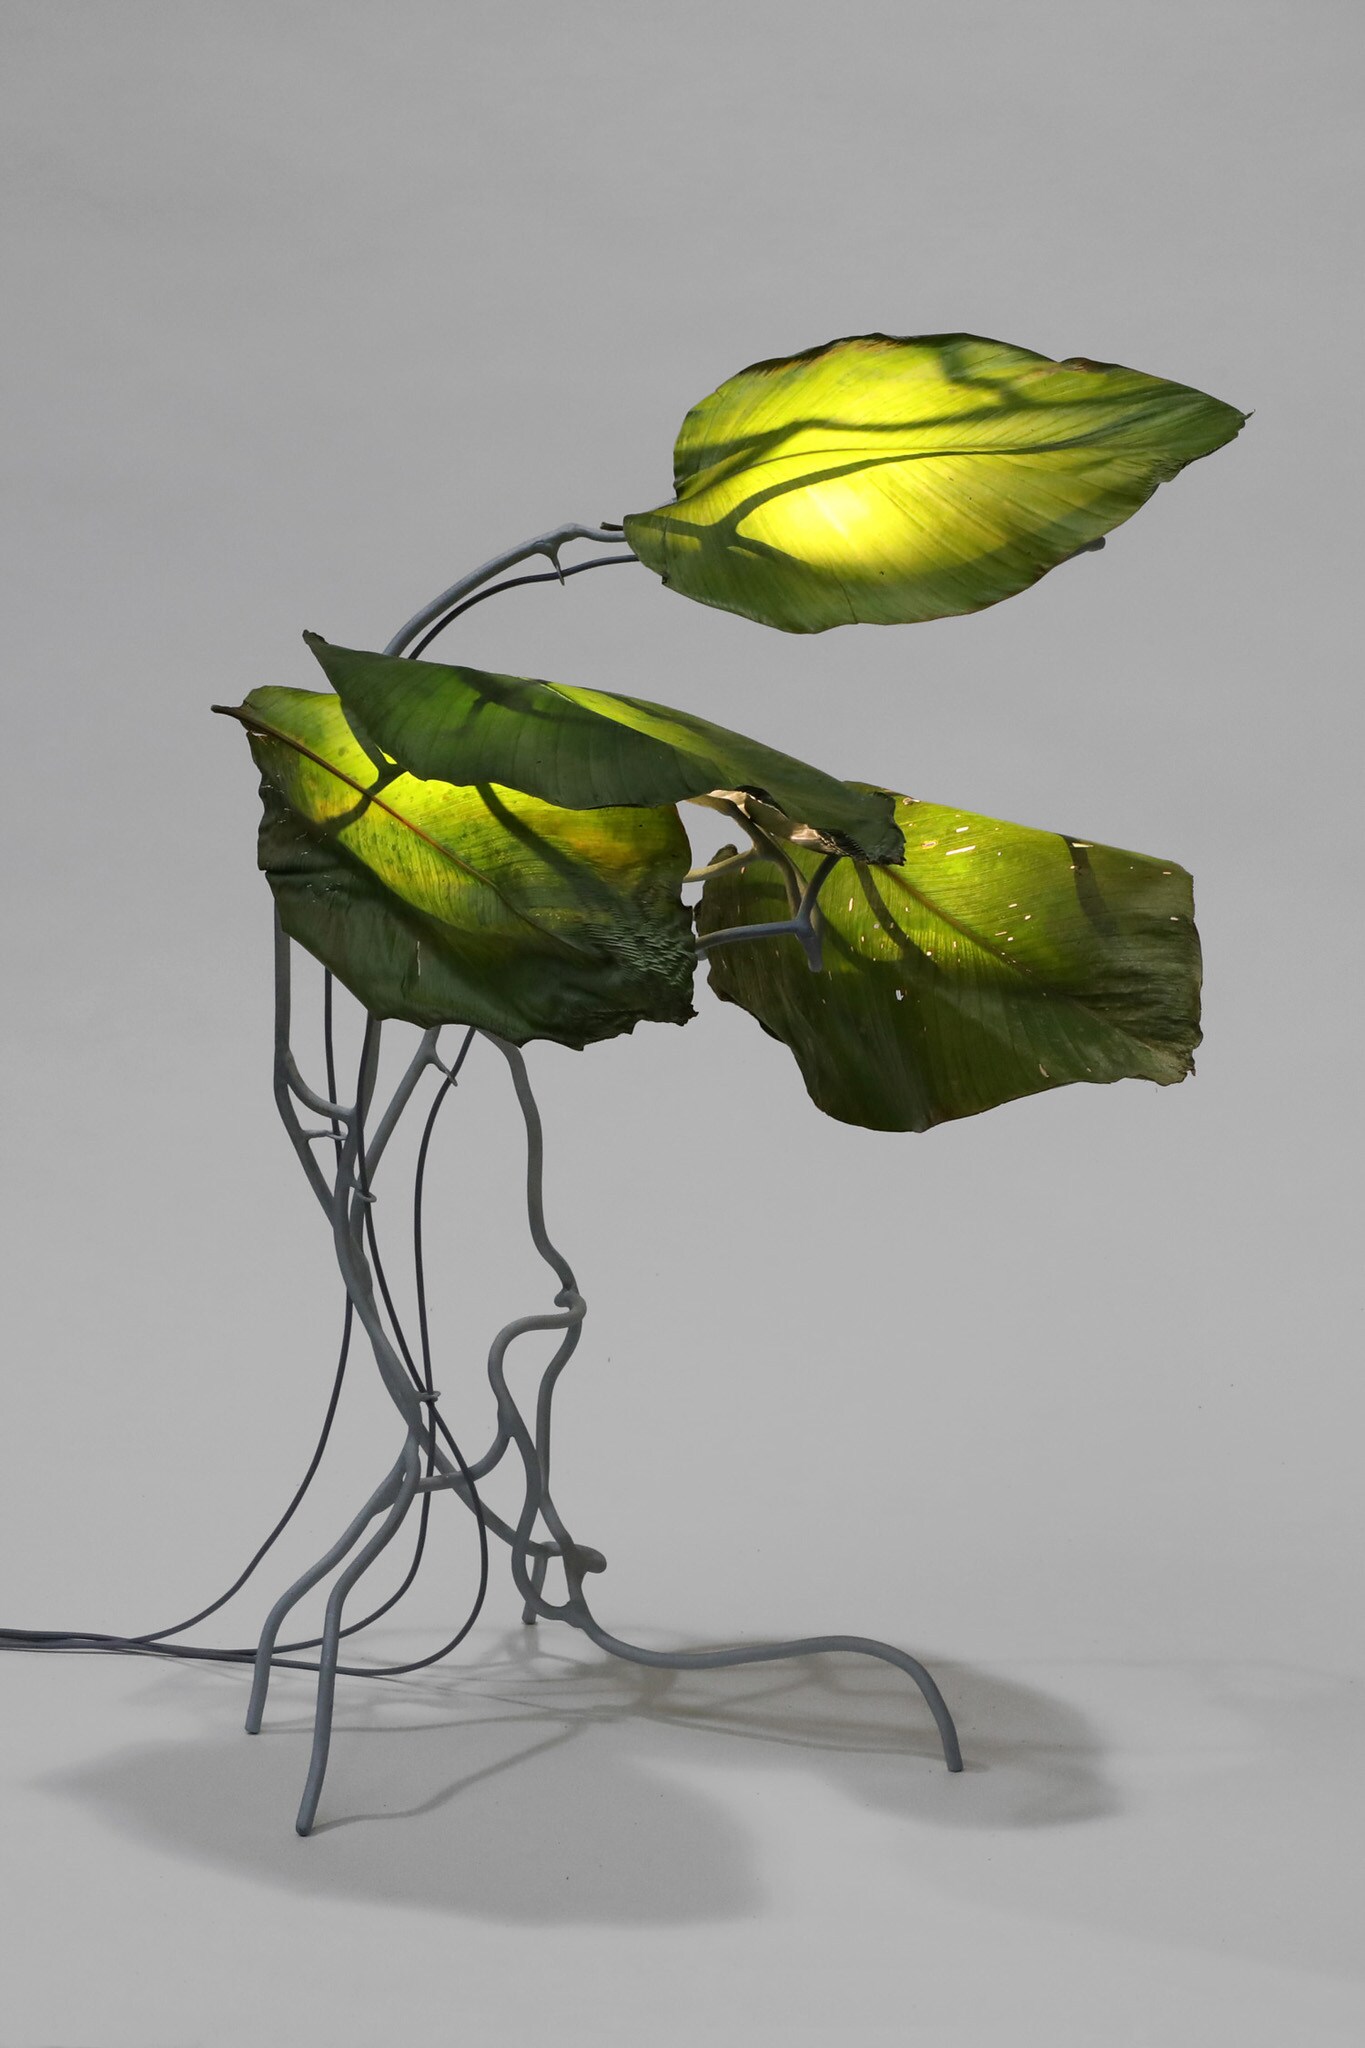 Lampada-scultura Protoplasting Nature: Encoded Symbols 00, realizzata con foglie in resina epossidica e struttura in filo d'acciaio zincato, Marcin Rusak per CARWAN GALLERY (24.400 €).